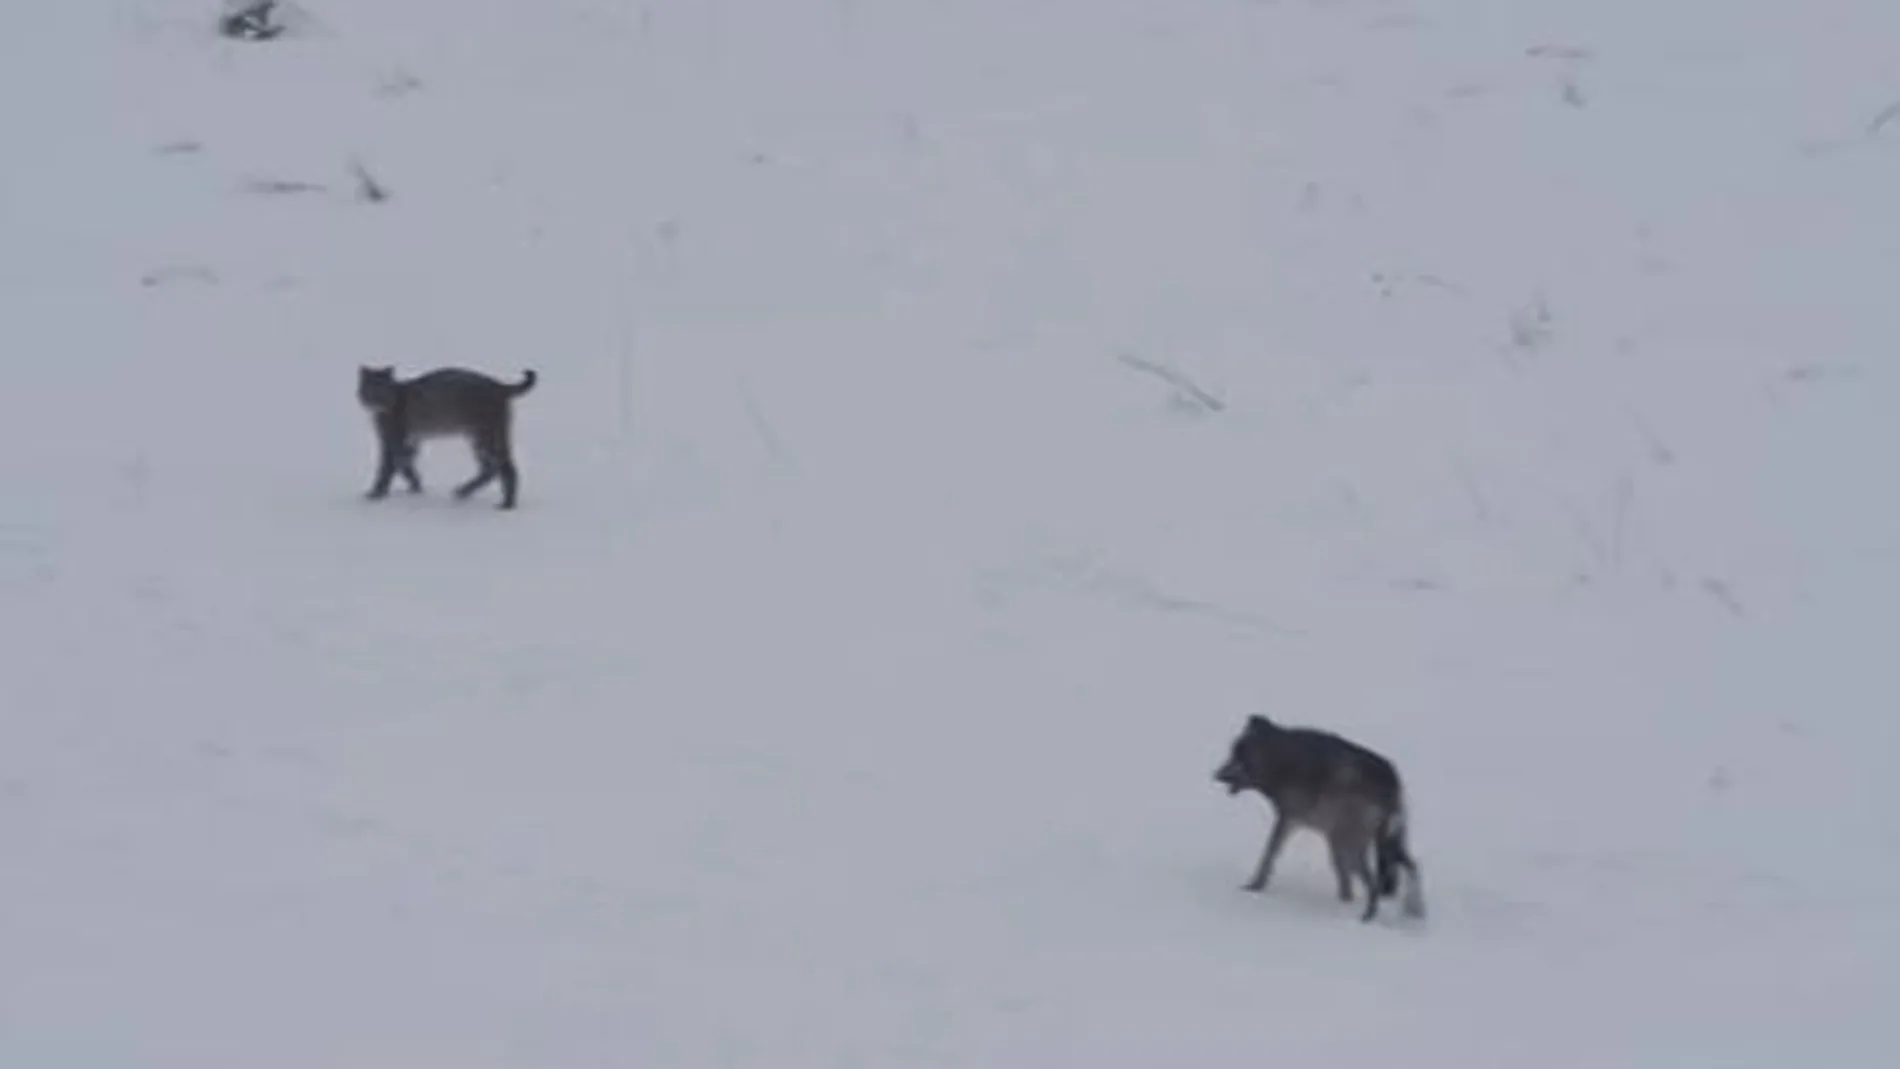 El lobo se acerca al lince boreal, en las imágenes captadas en Polonia